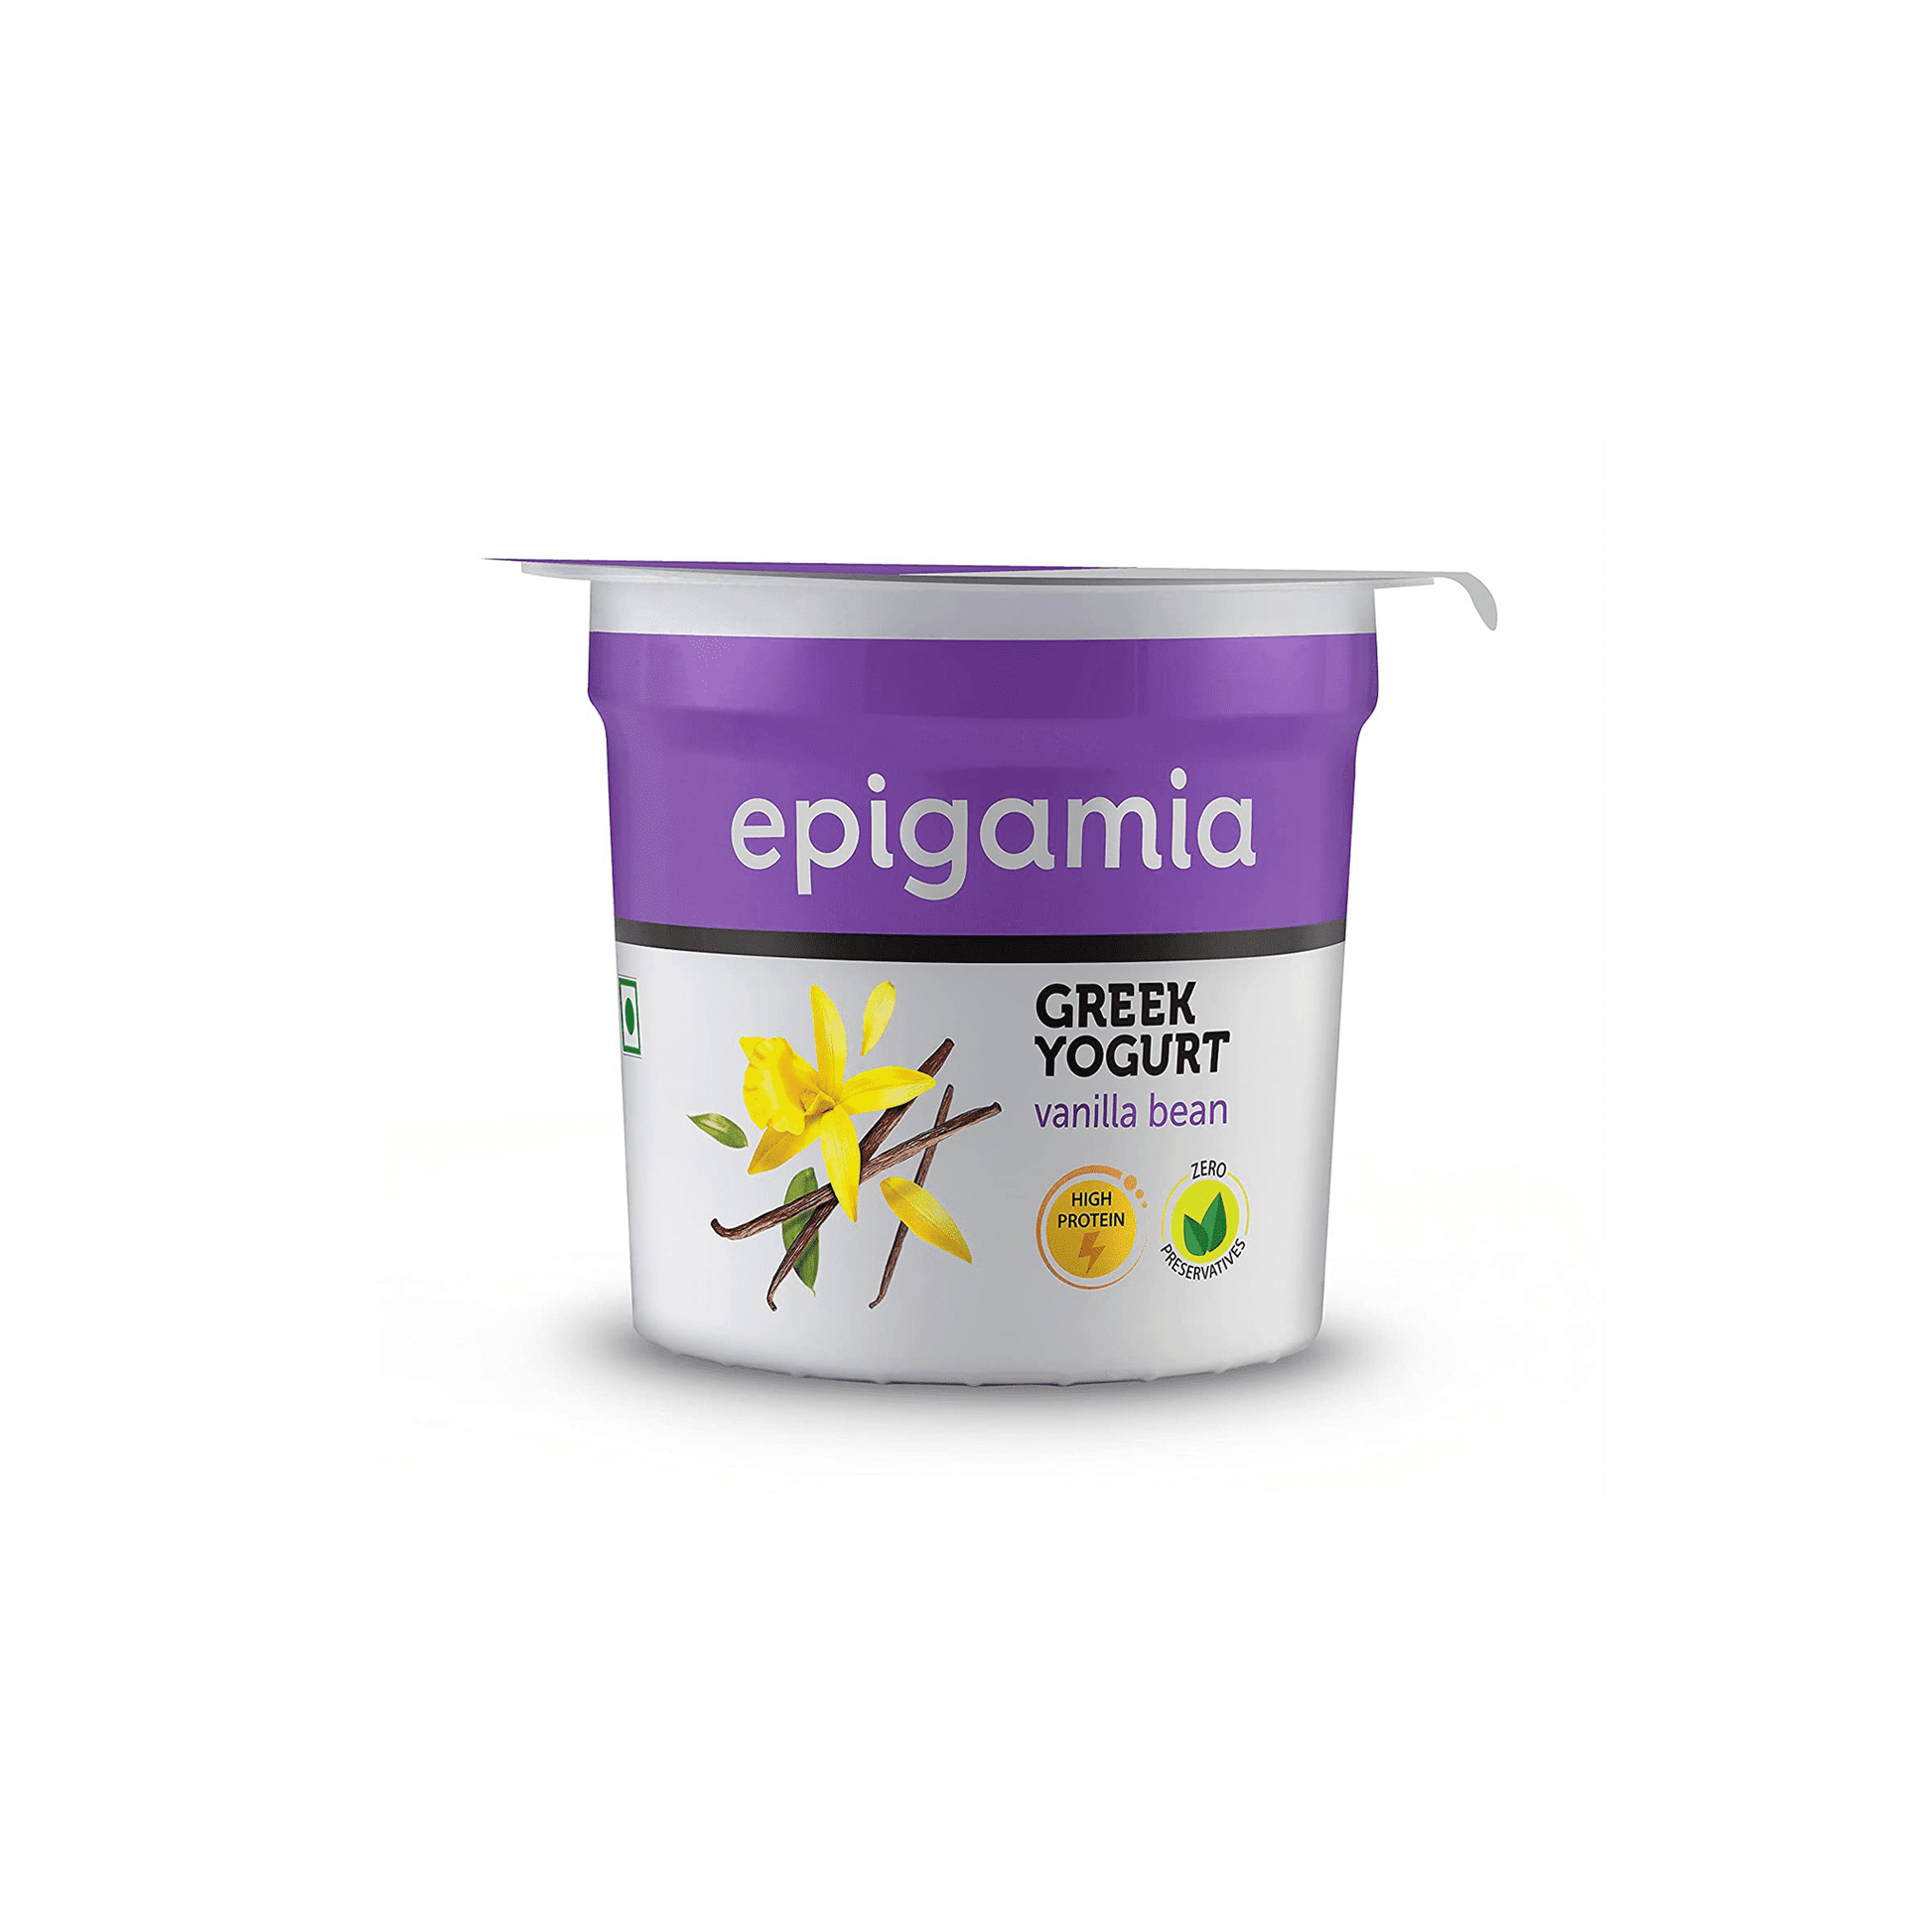 Epigamia Vanilla Bean Greek Yogurt.